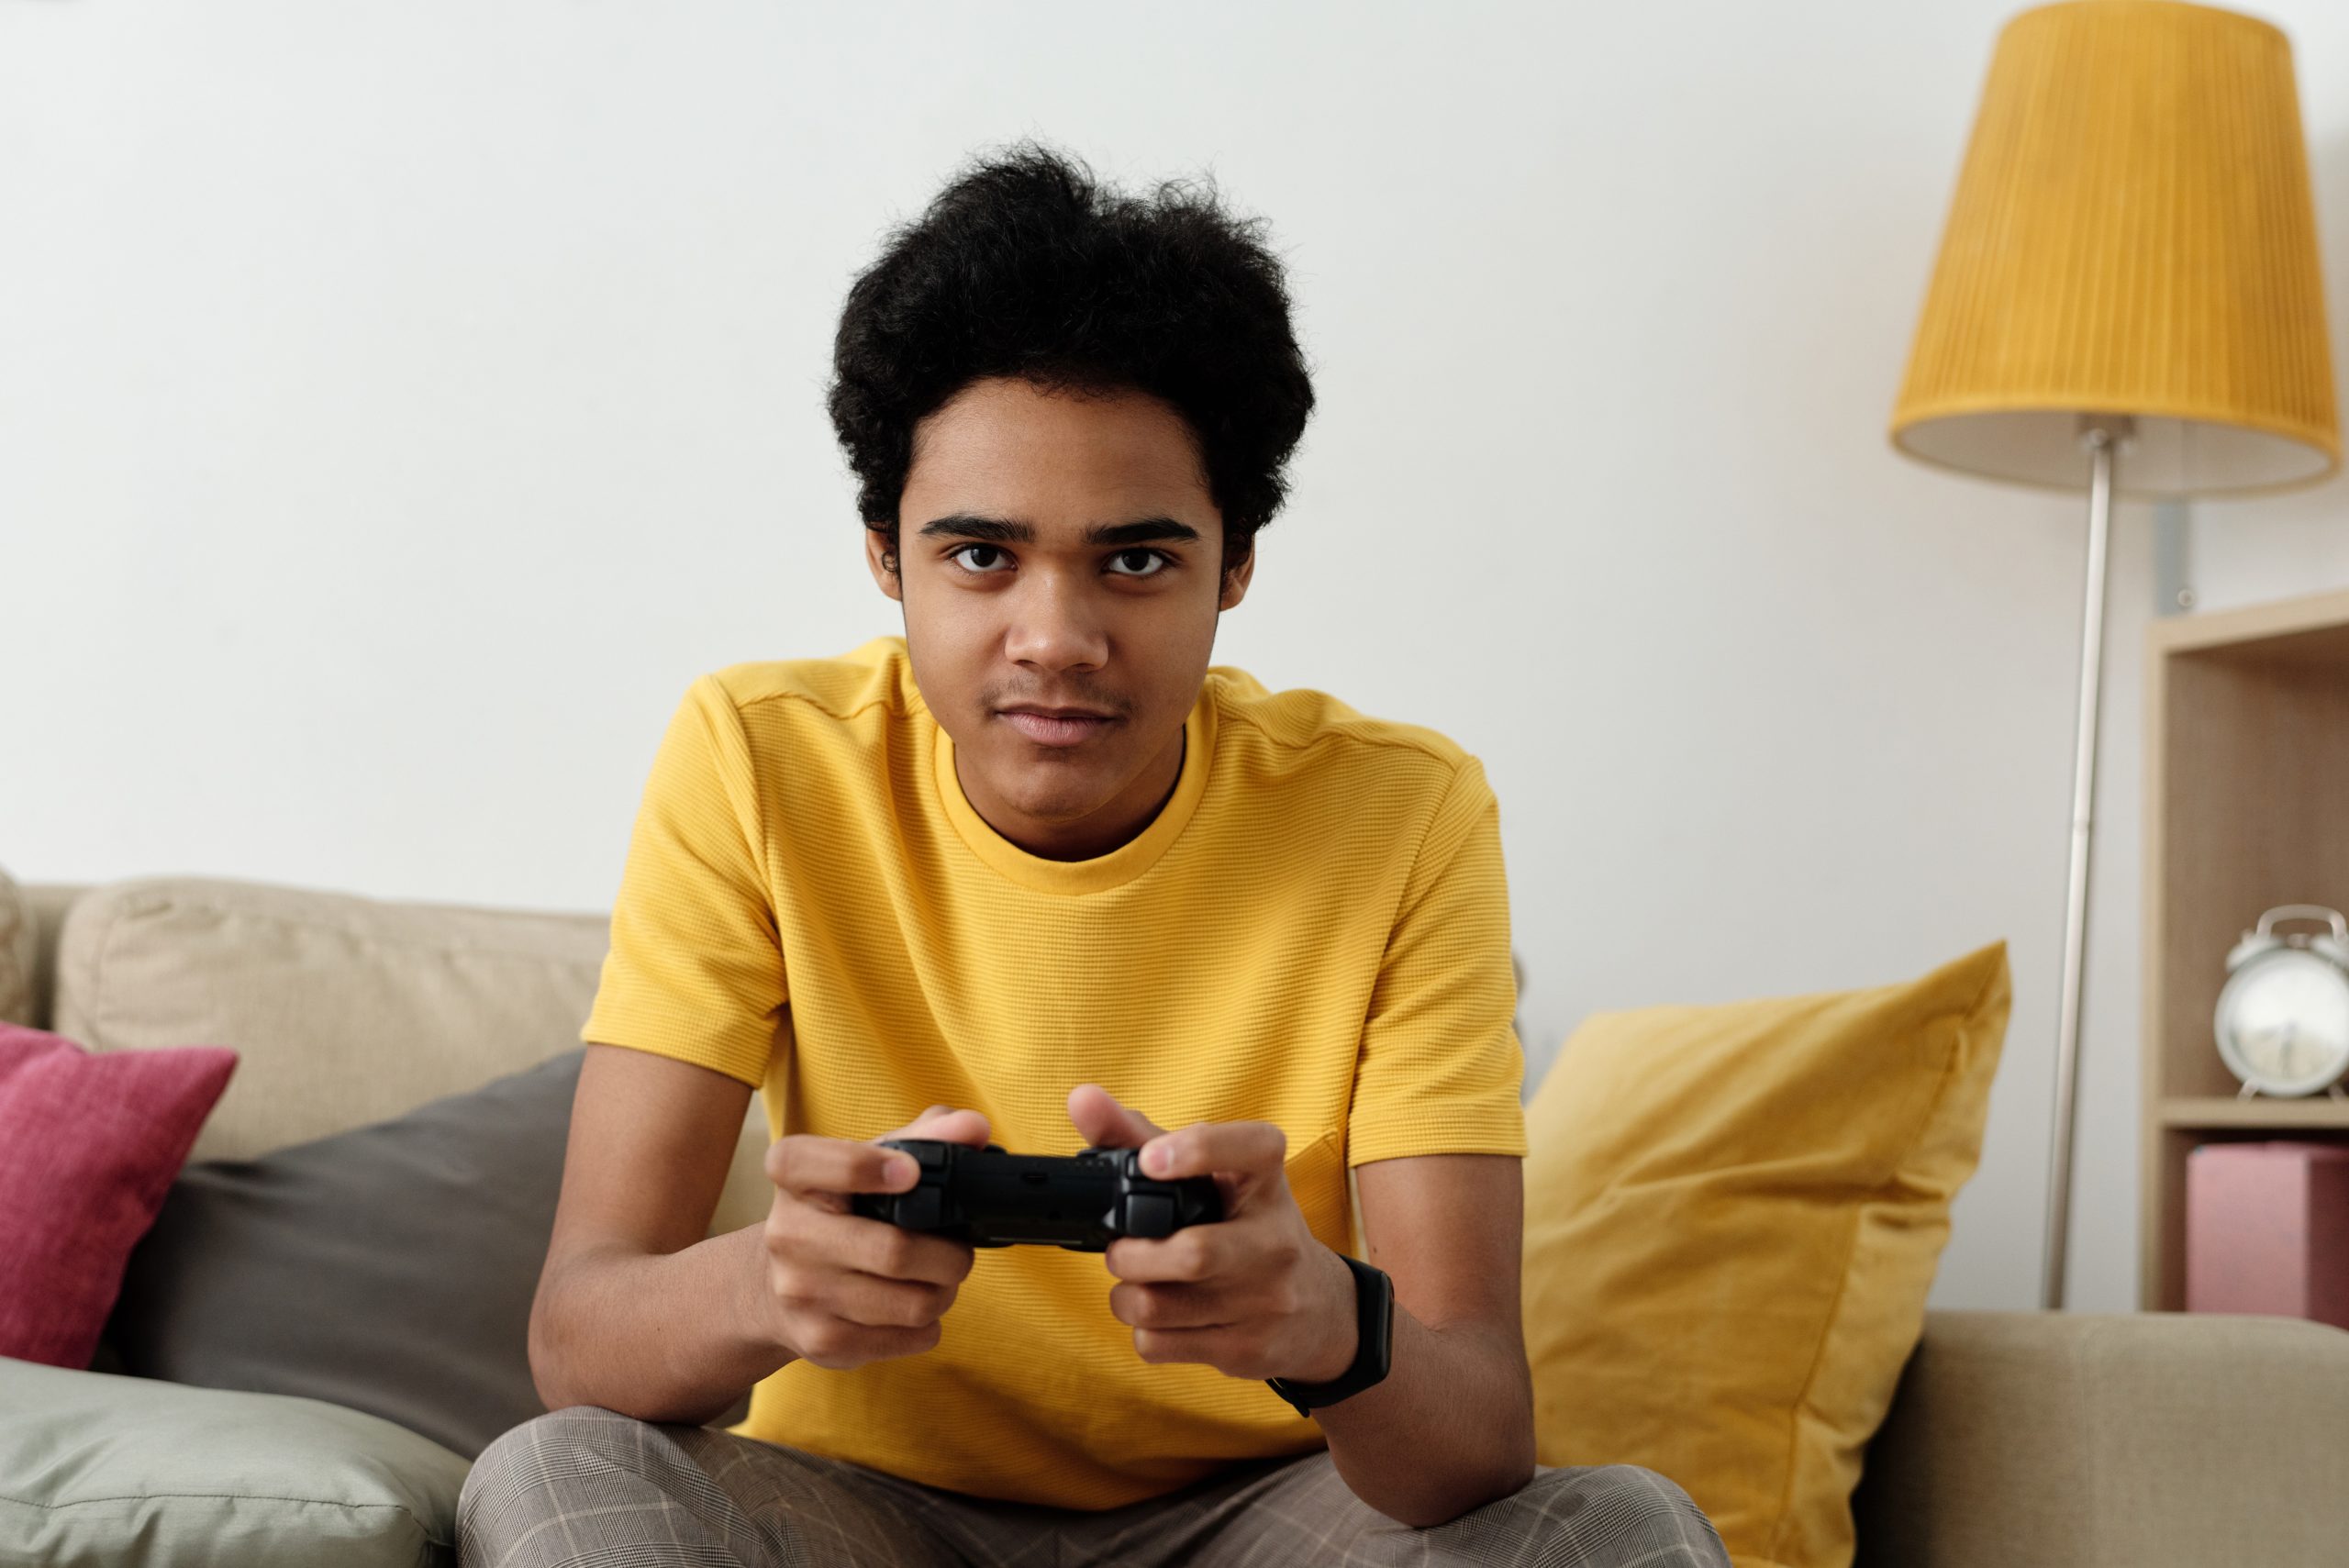 Dear Katherine: My Kids Love Video Games—Should I Be Concerned?